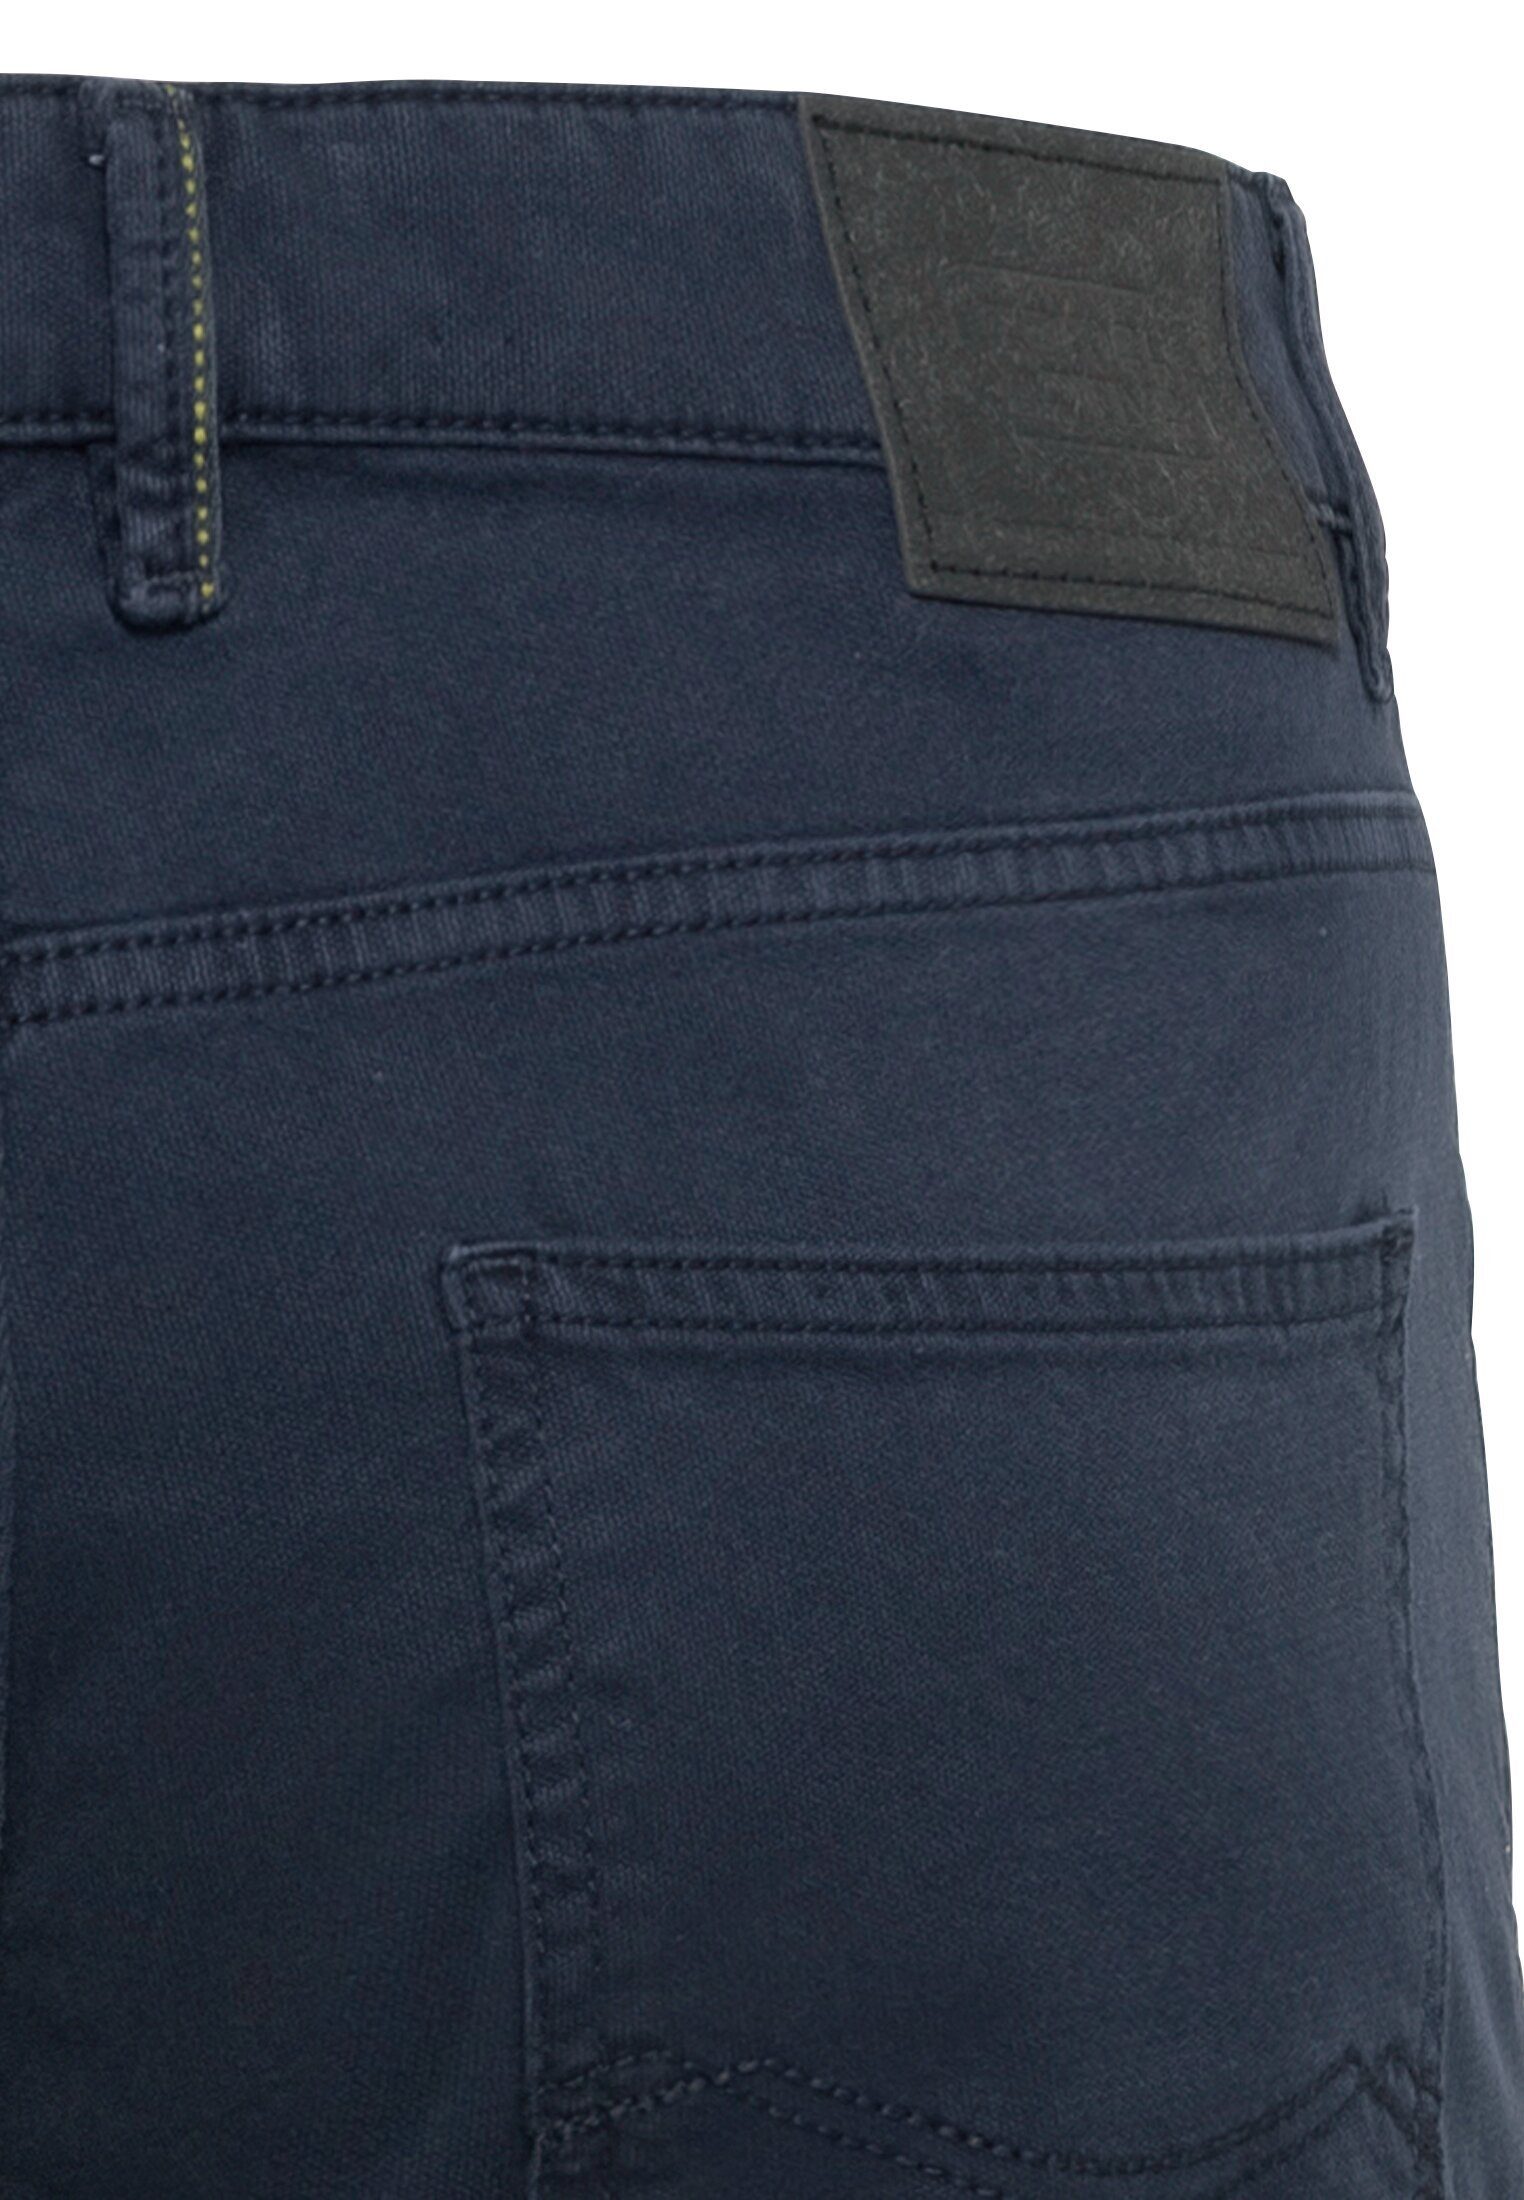 camel active 5-Pocket-Jeans Canvas Regular Dunkelblau Fit 5-Pocket Hose